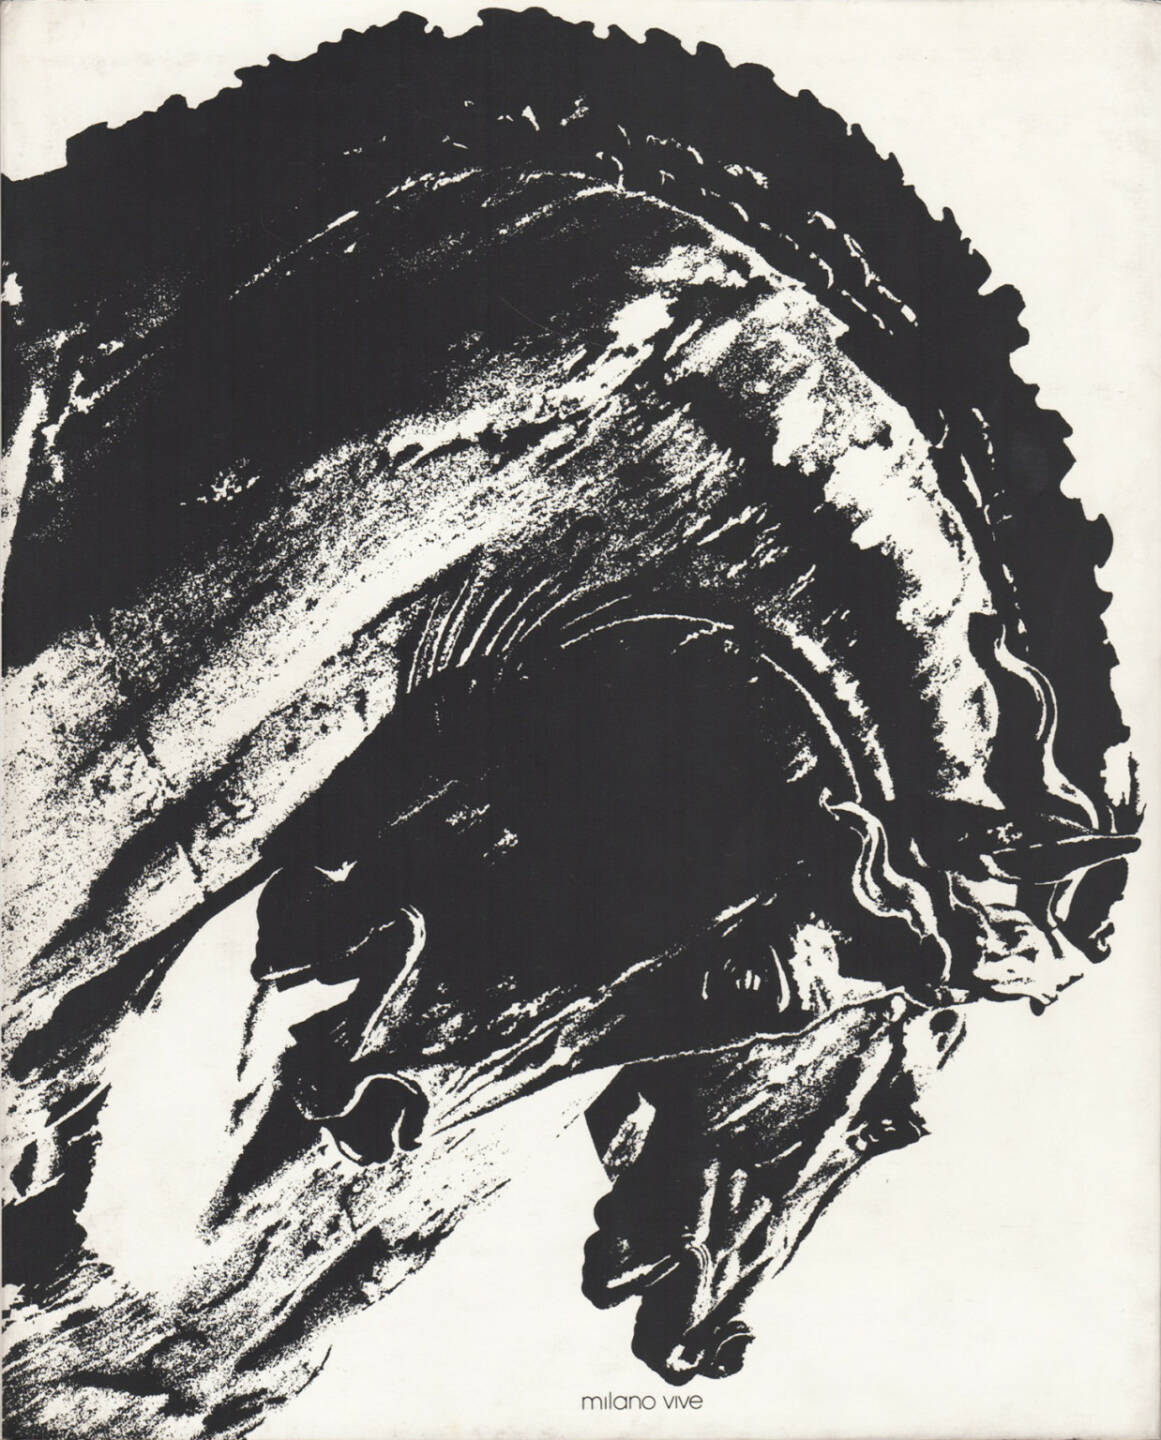 Dante Bighi - Milano Vive, Stampa Poligrafica Boroni 1983, Cover -http://josefchladek.com/book/dante_bighi_-_milano_vive